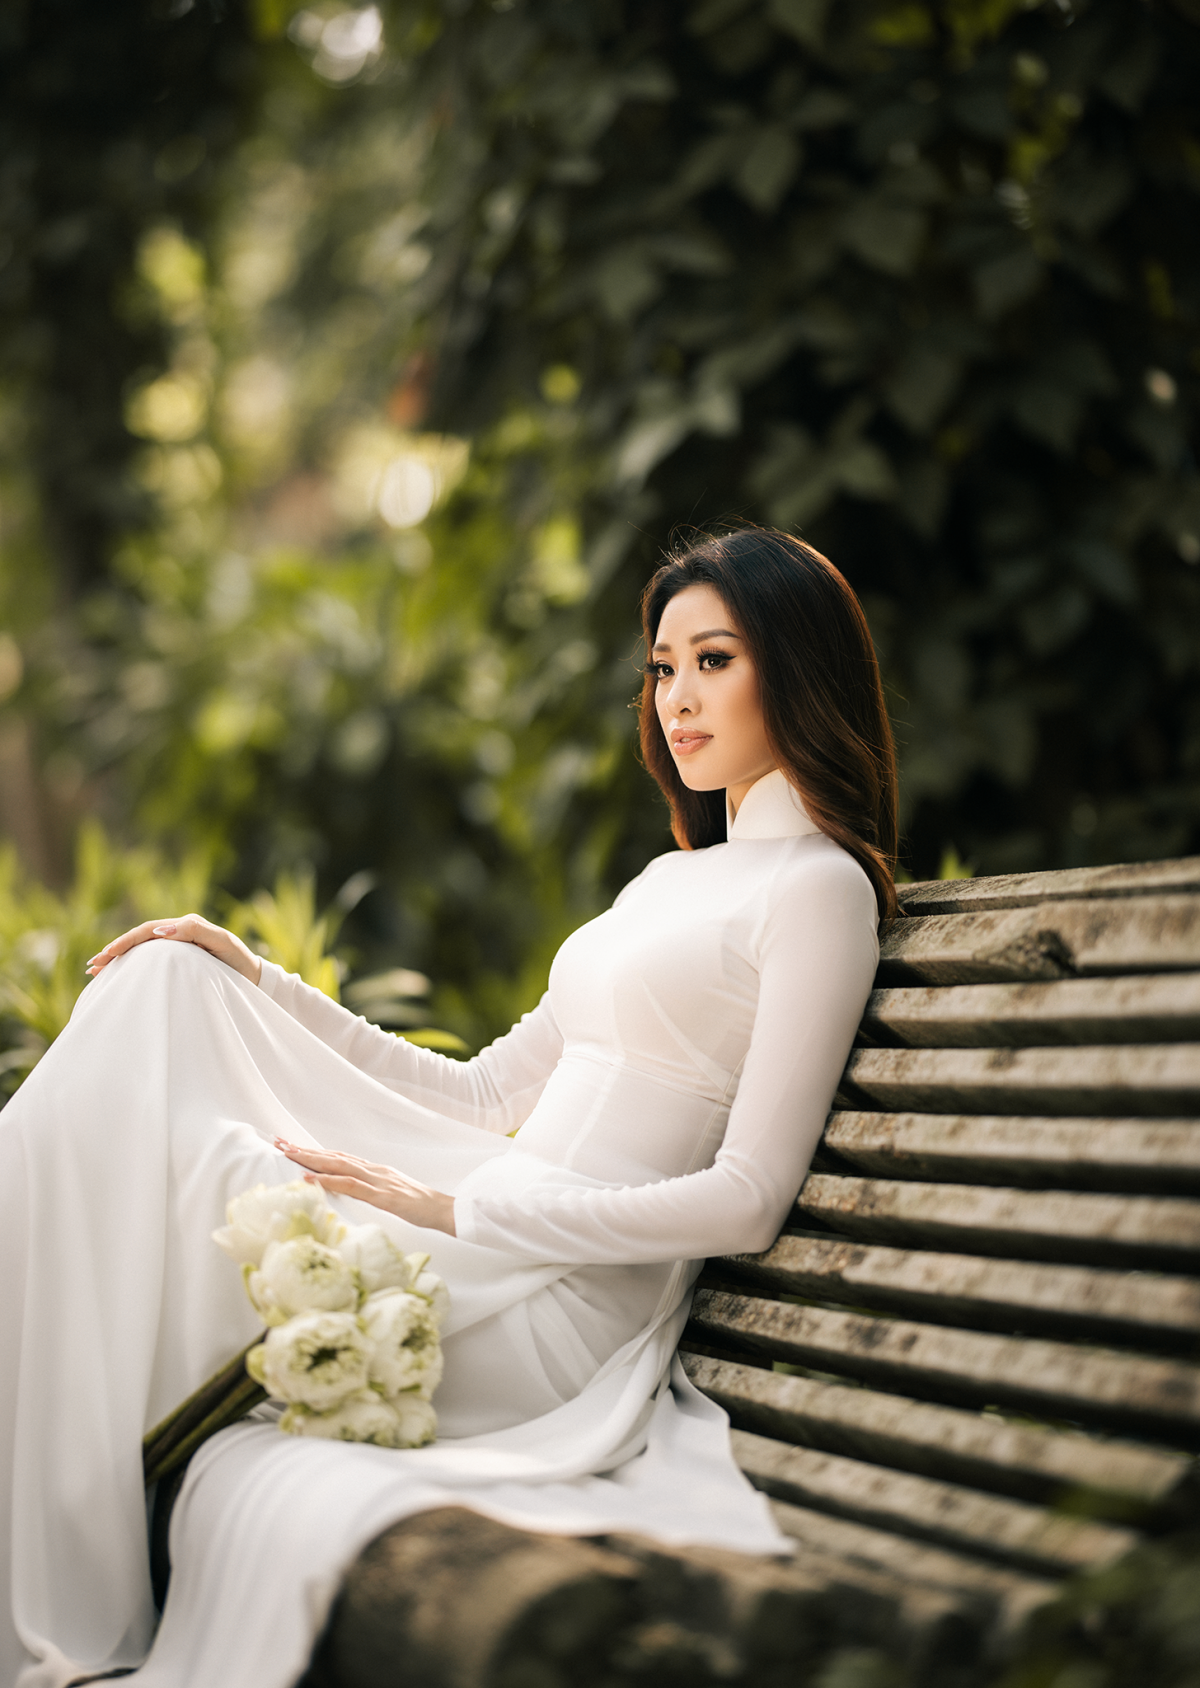 Vì vậy, trong bộ ảnh áo dài lần này, Hoa hậu Khánh Vân chọn thiết kế đơn giản màu trắng, tôn vóc dáng, khoe đường cong mềm mại, uyển chuyển của người phụ nữ.